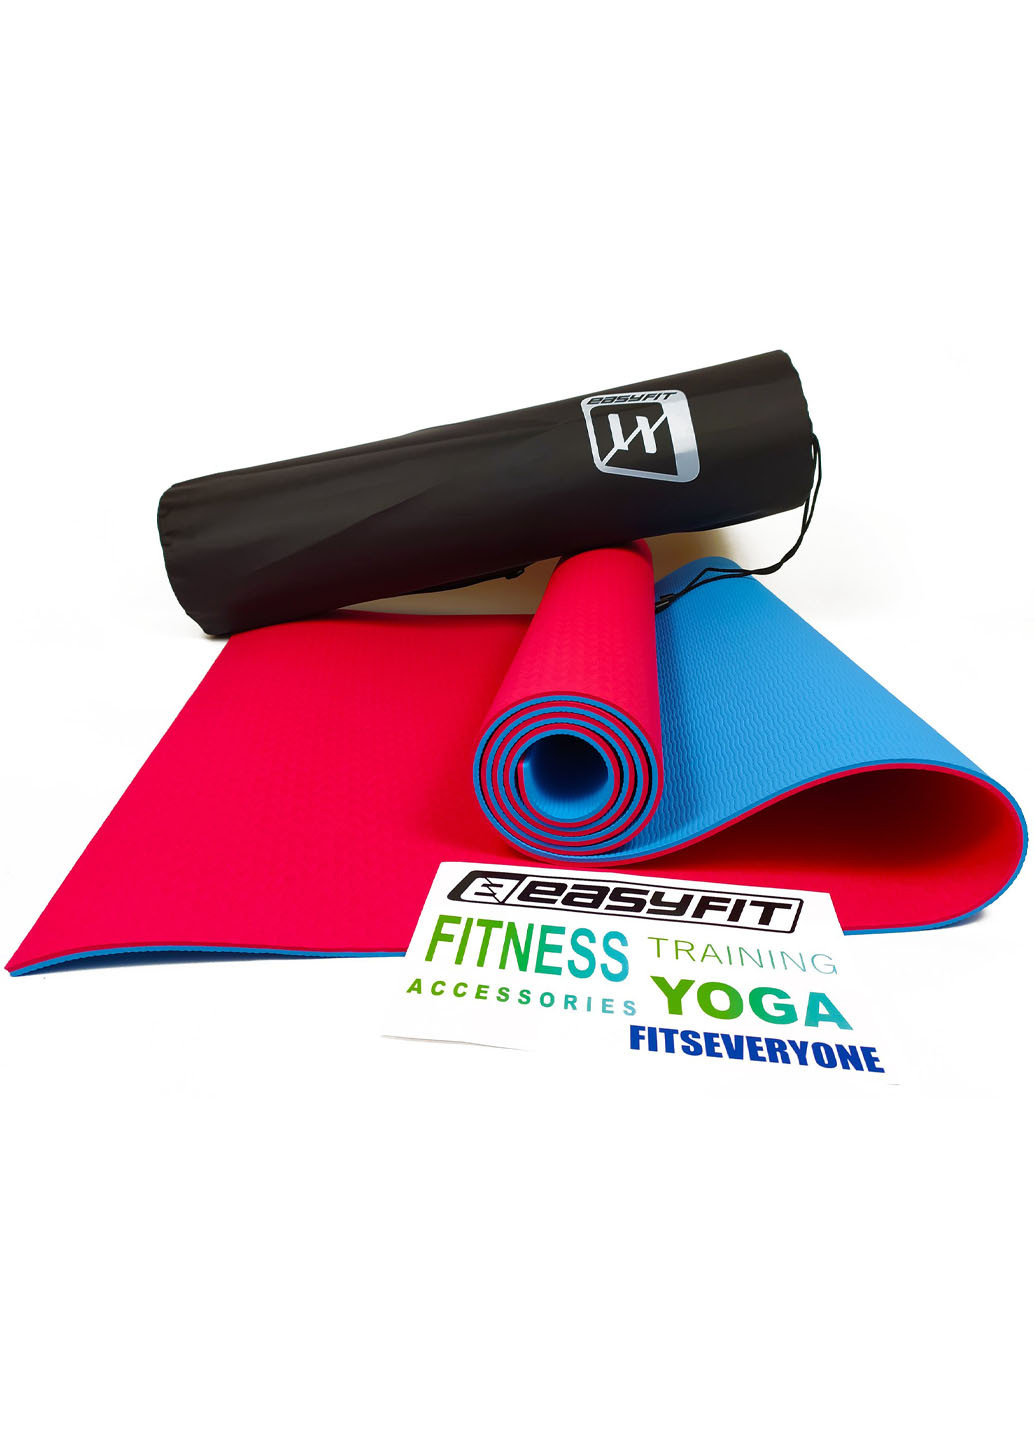 Коврик для йоги TPE+TC ECO-Friendly 6 мм красный с голубым (мат-каремат спортивный, йогамат для фитнеса, пилатеса) EasyFit (237596286)